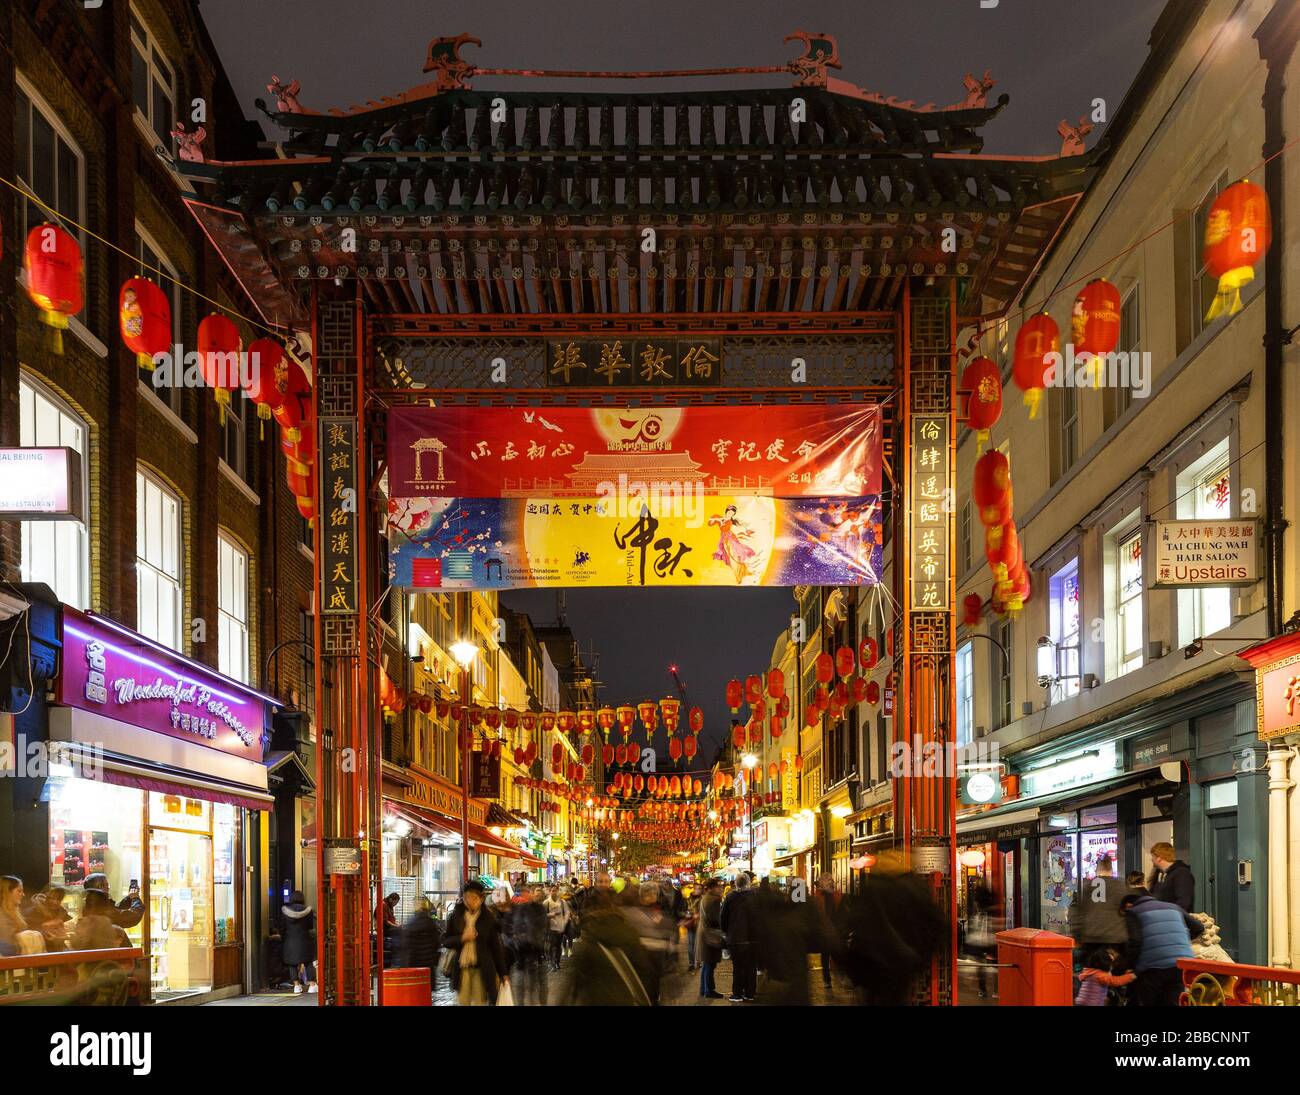 LONDRES, Royaume-Uni - 24 NOVEMBRE 2019 : vue sur l'architecture, les lanternes et d'autres architectures à Chinatown à Londres la nuit. Les gens peuvent être vus. Banque D'Images